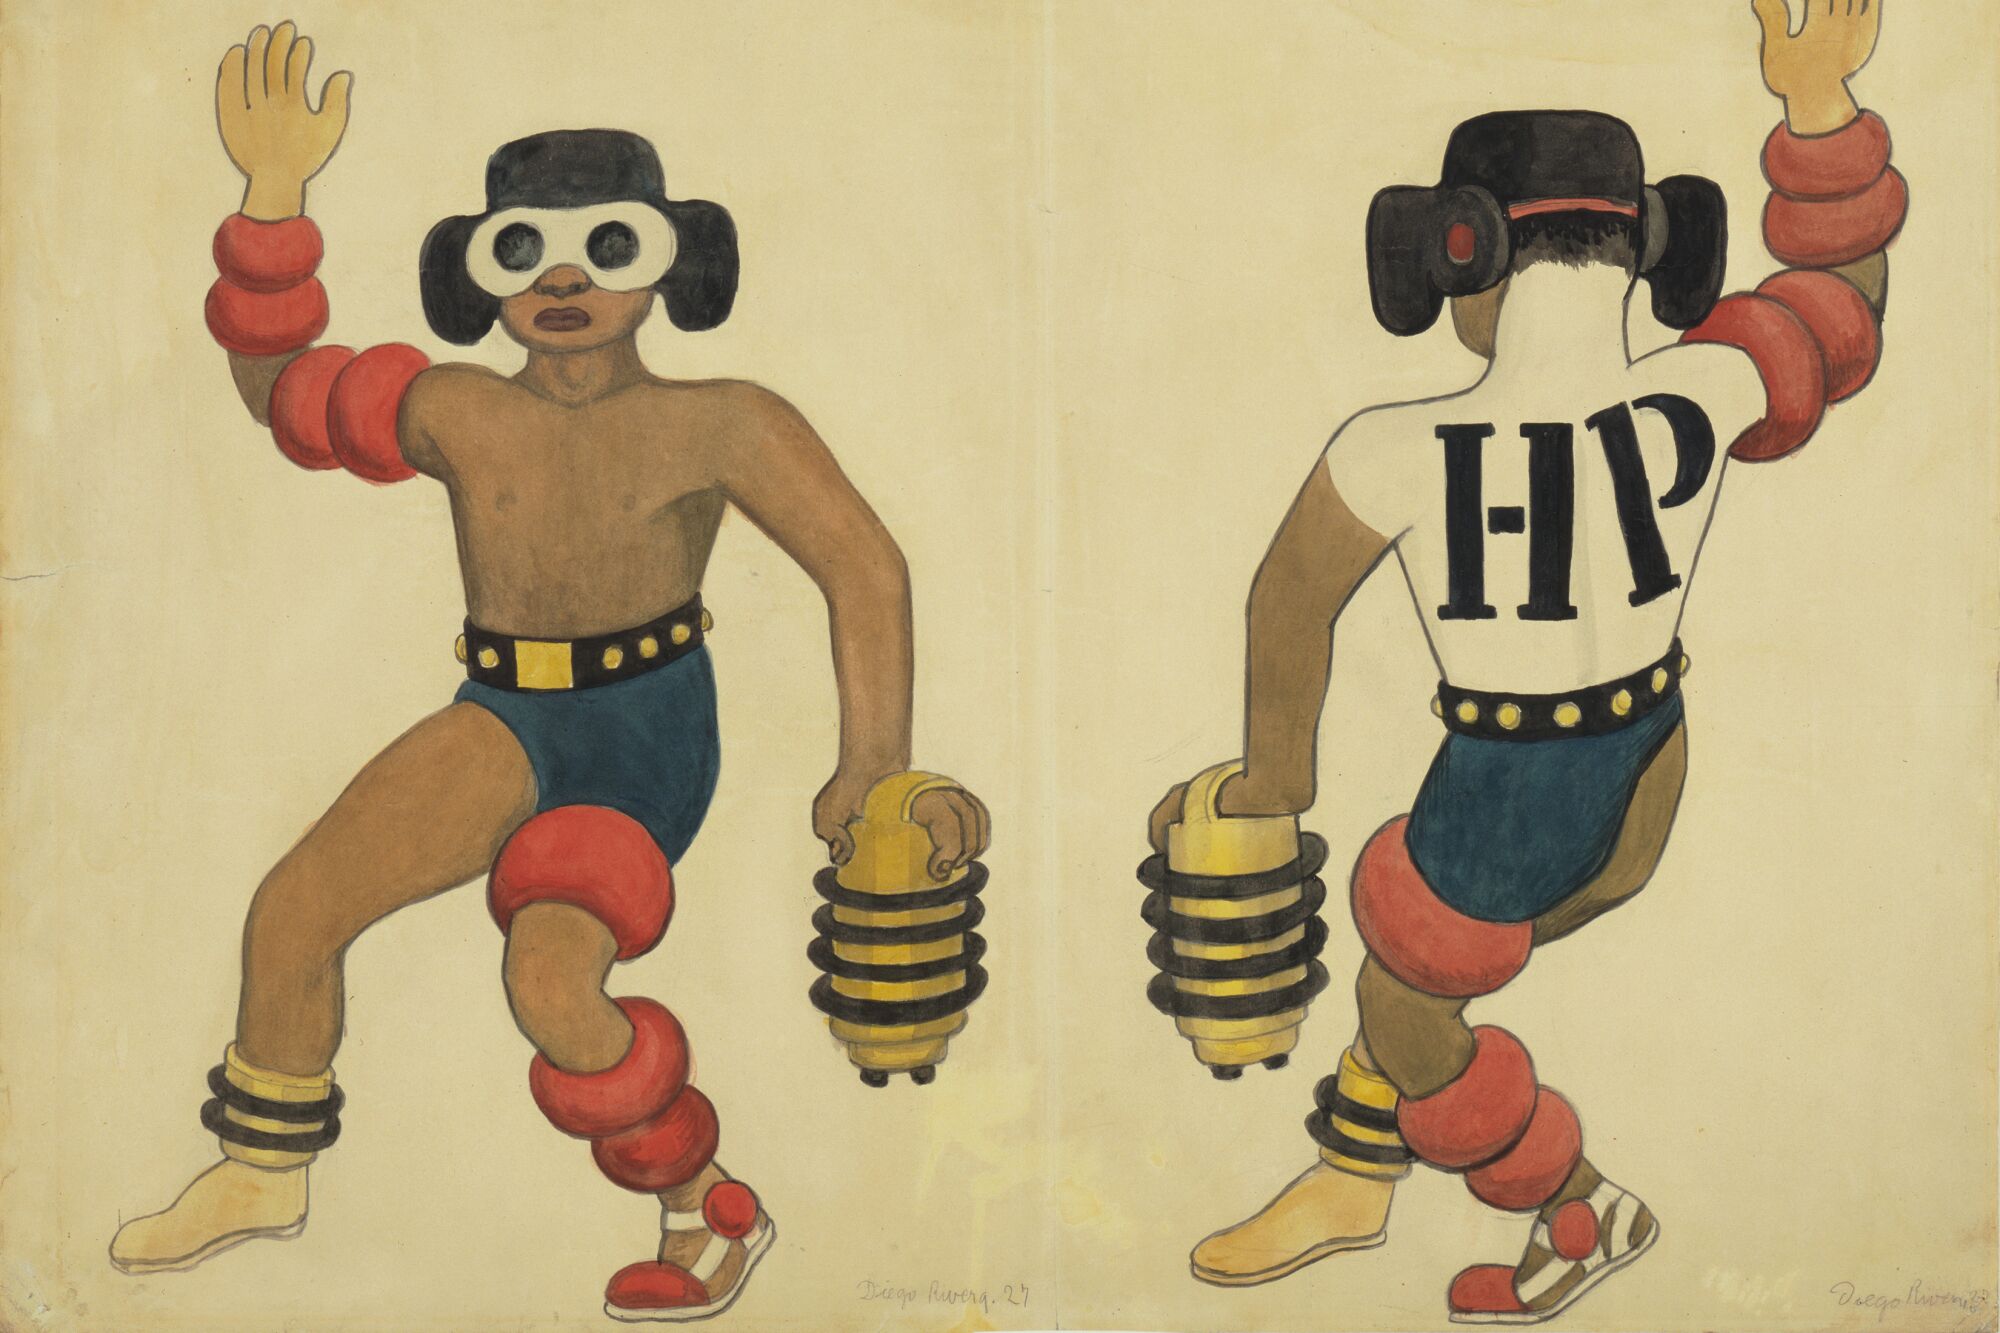 Muestras sobre Diego Rivera y estampas coloniales cuentan una historia  profunda - Los Angeles Times